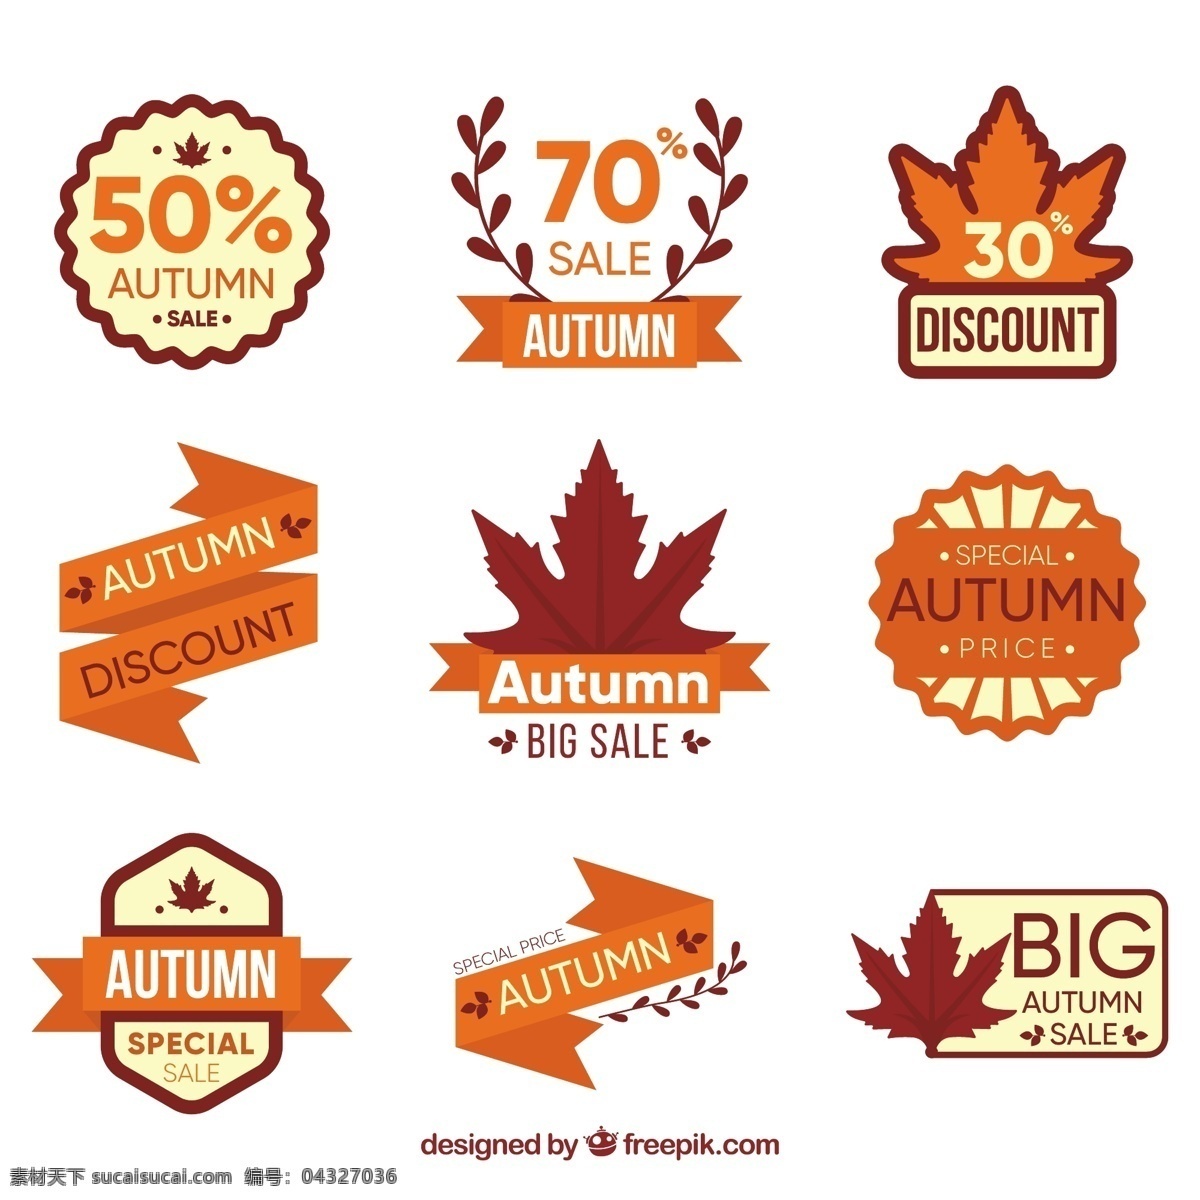 布朗 秋季 销售 标签 收集 树叶 自然 购物 秋天 促销 折扣 价格 报价 商店 元素 颜色 棕色 特价